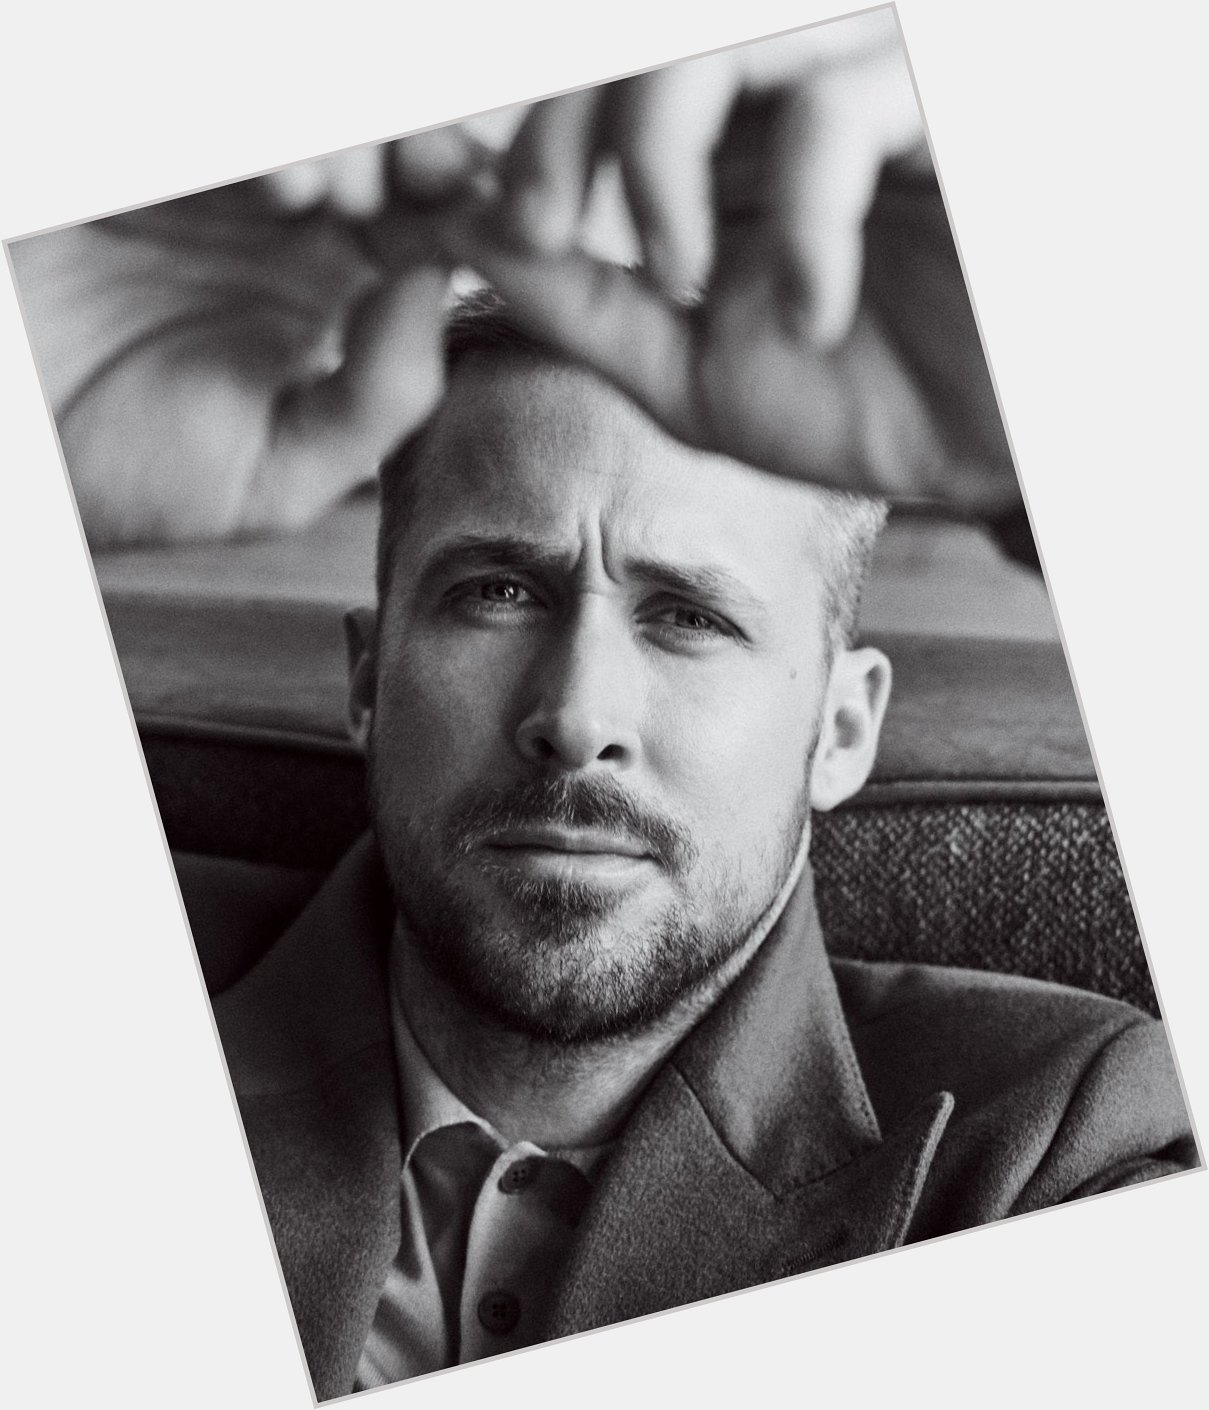 Happy Birthday, Ryan Gosling! Funniest, hottest man on earth 